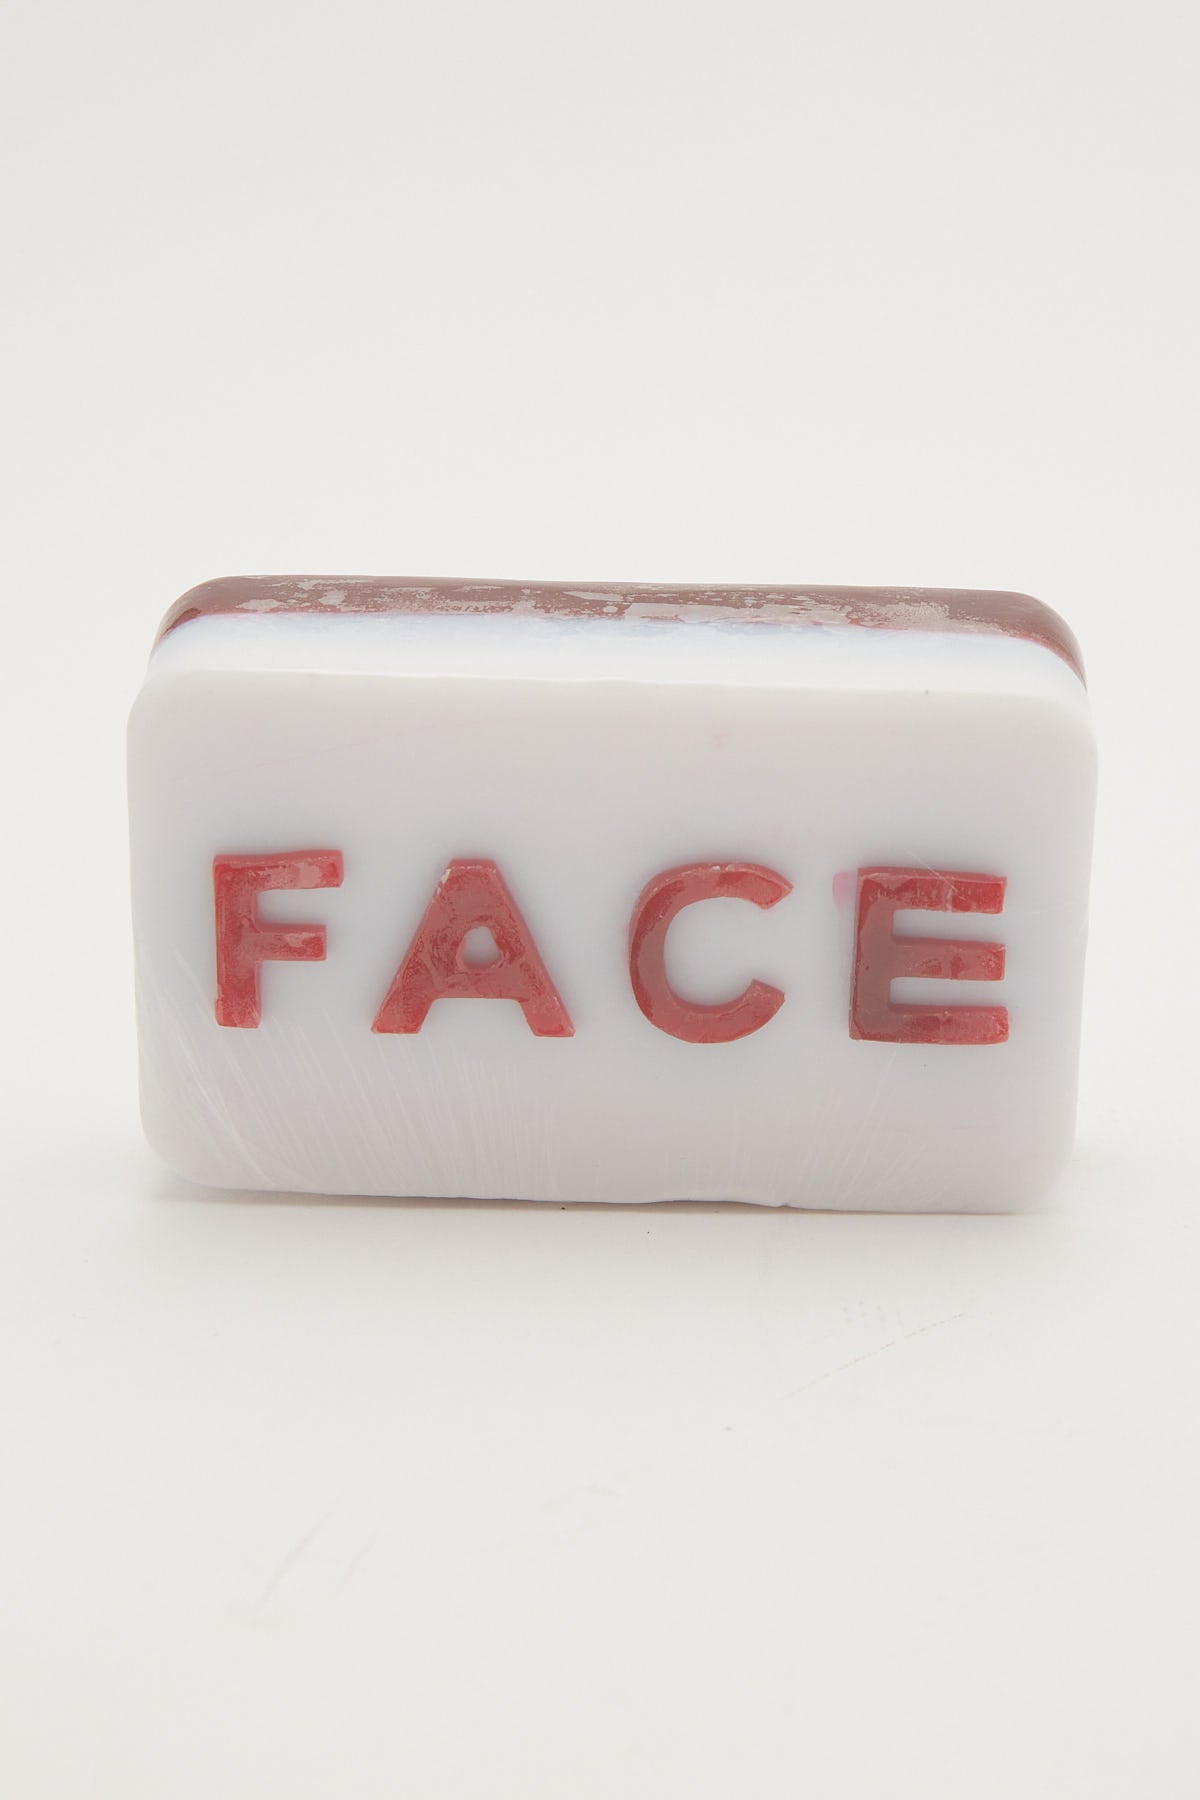 Mdi Arse Face Soap